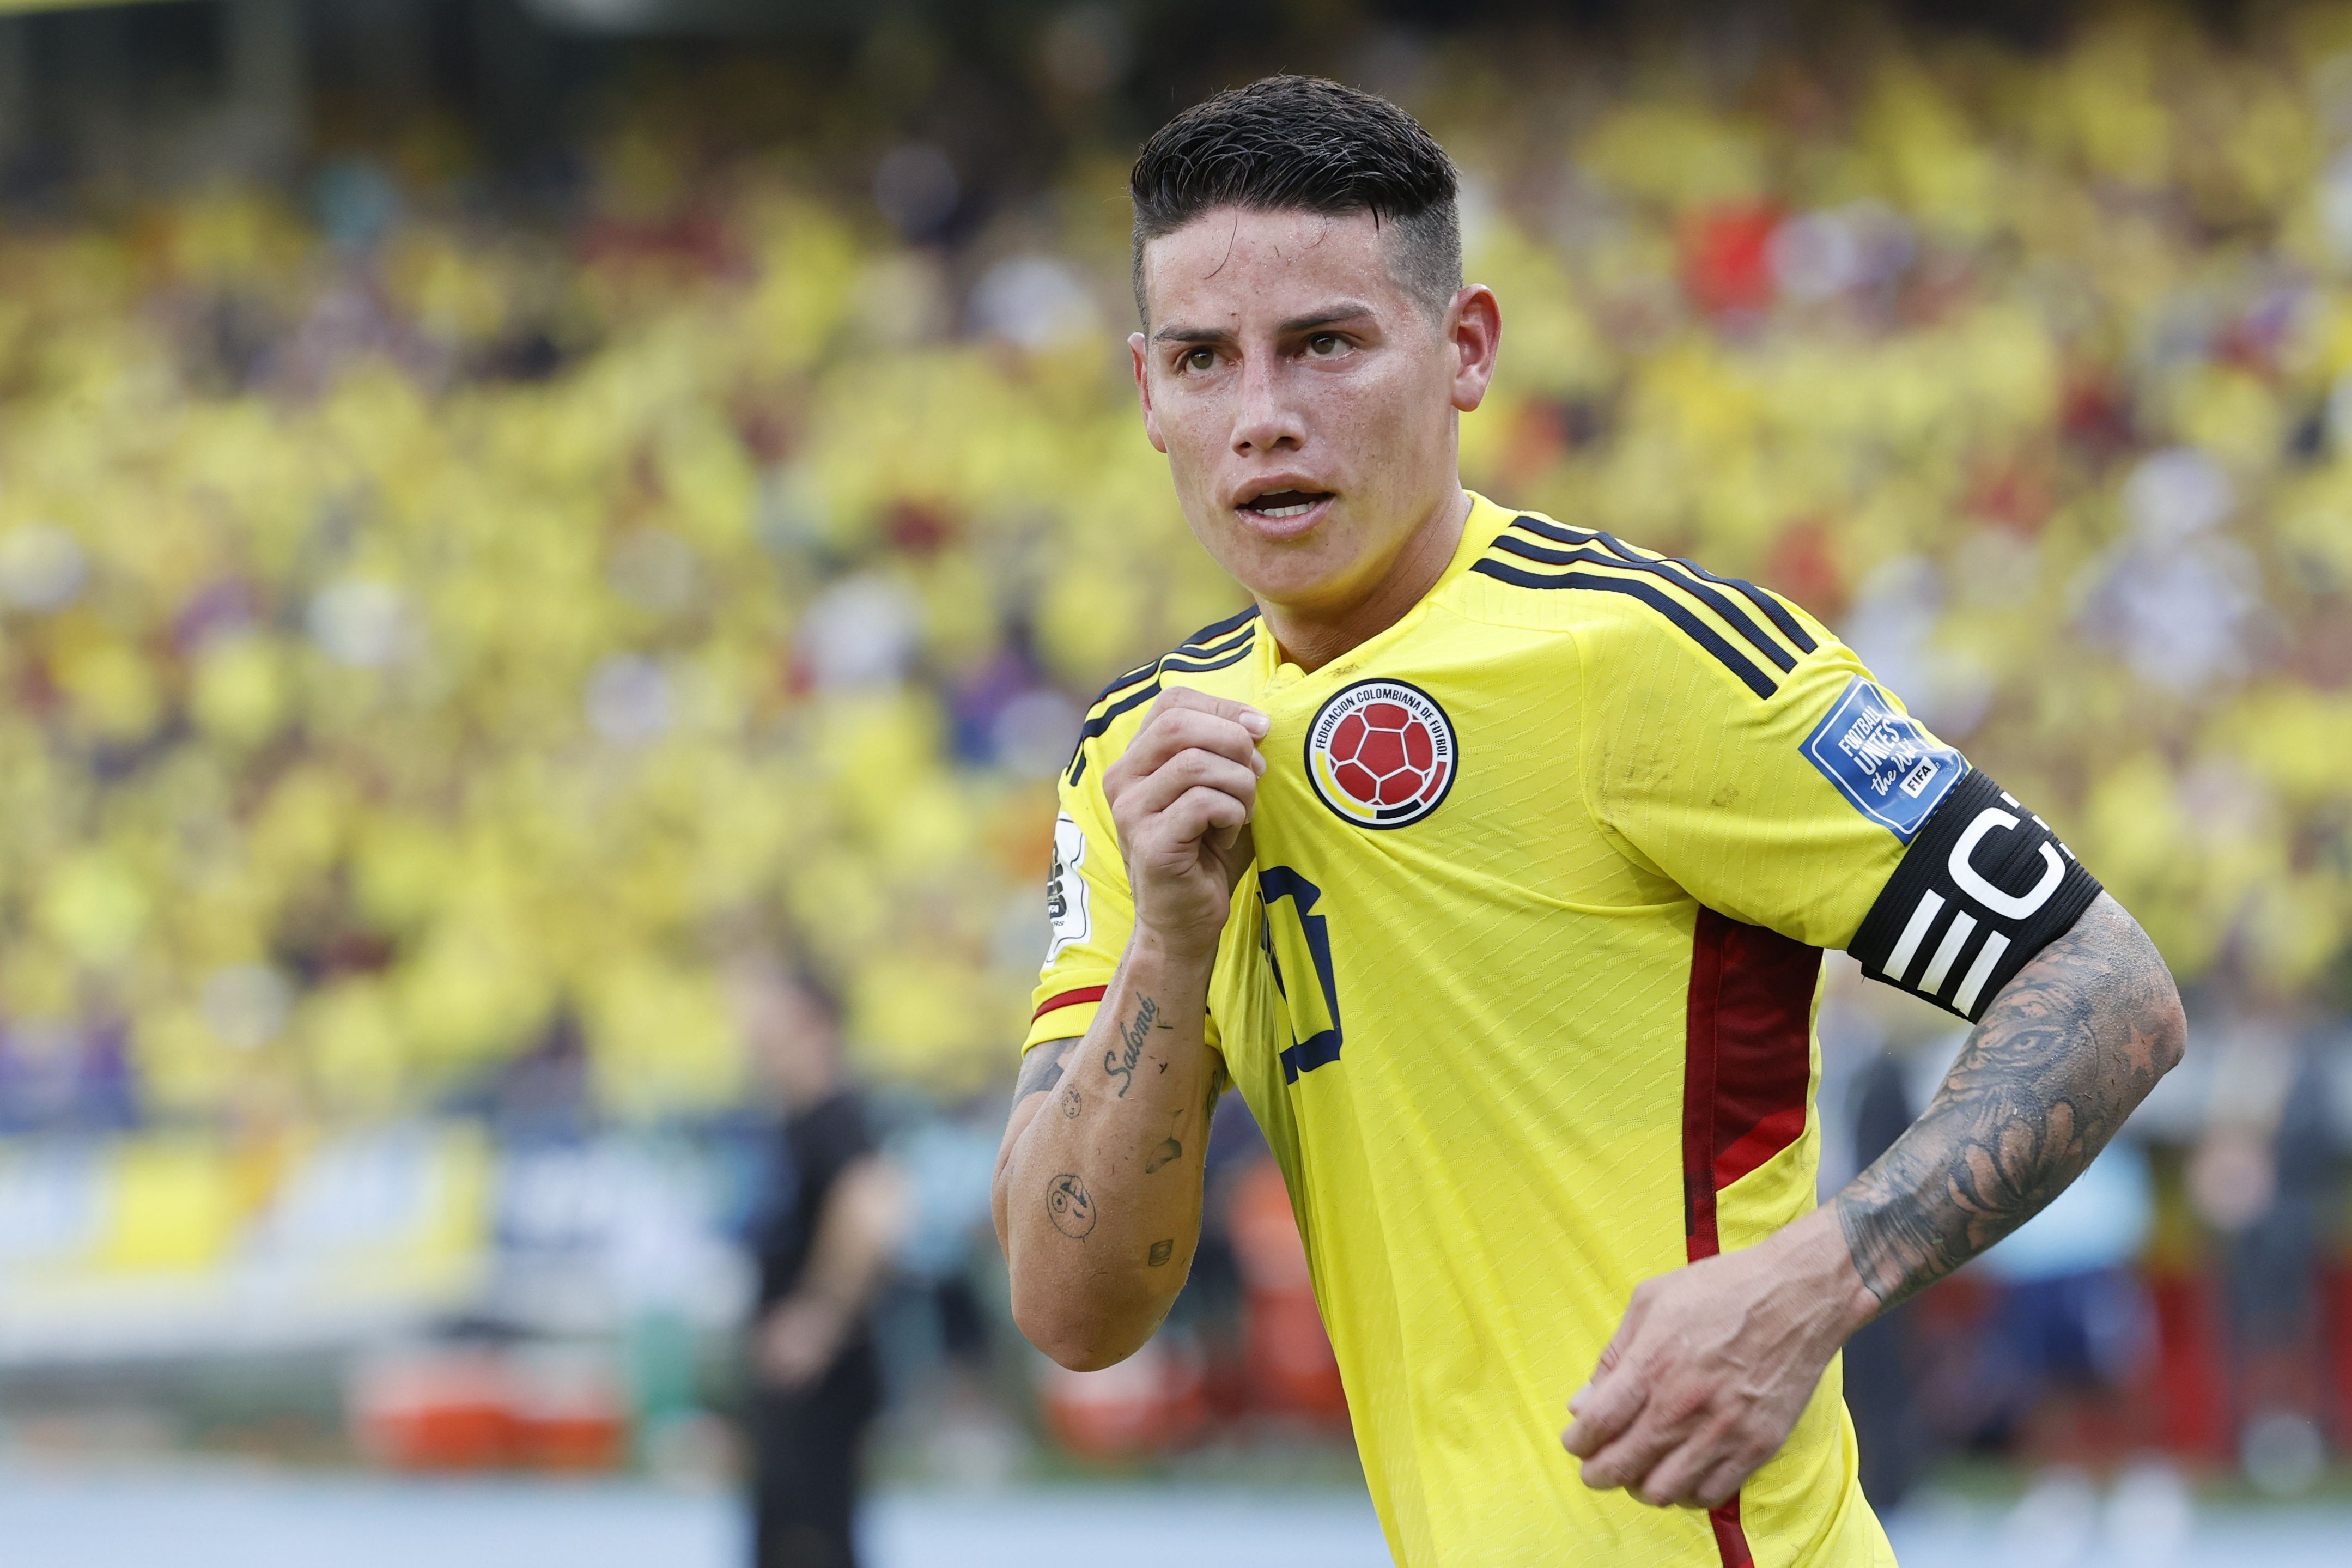 Selección Colombia vs. Uruguay hoy: resultado del partido en Eliminatorias